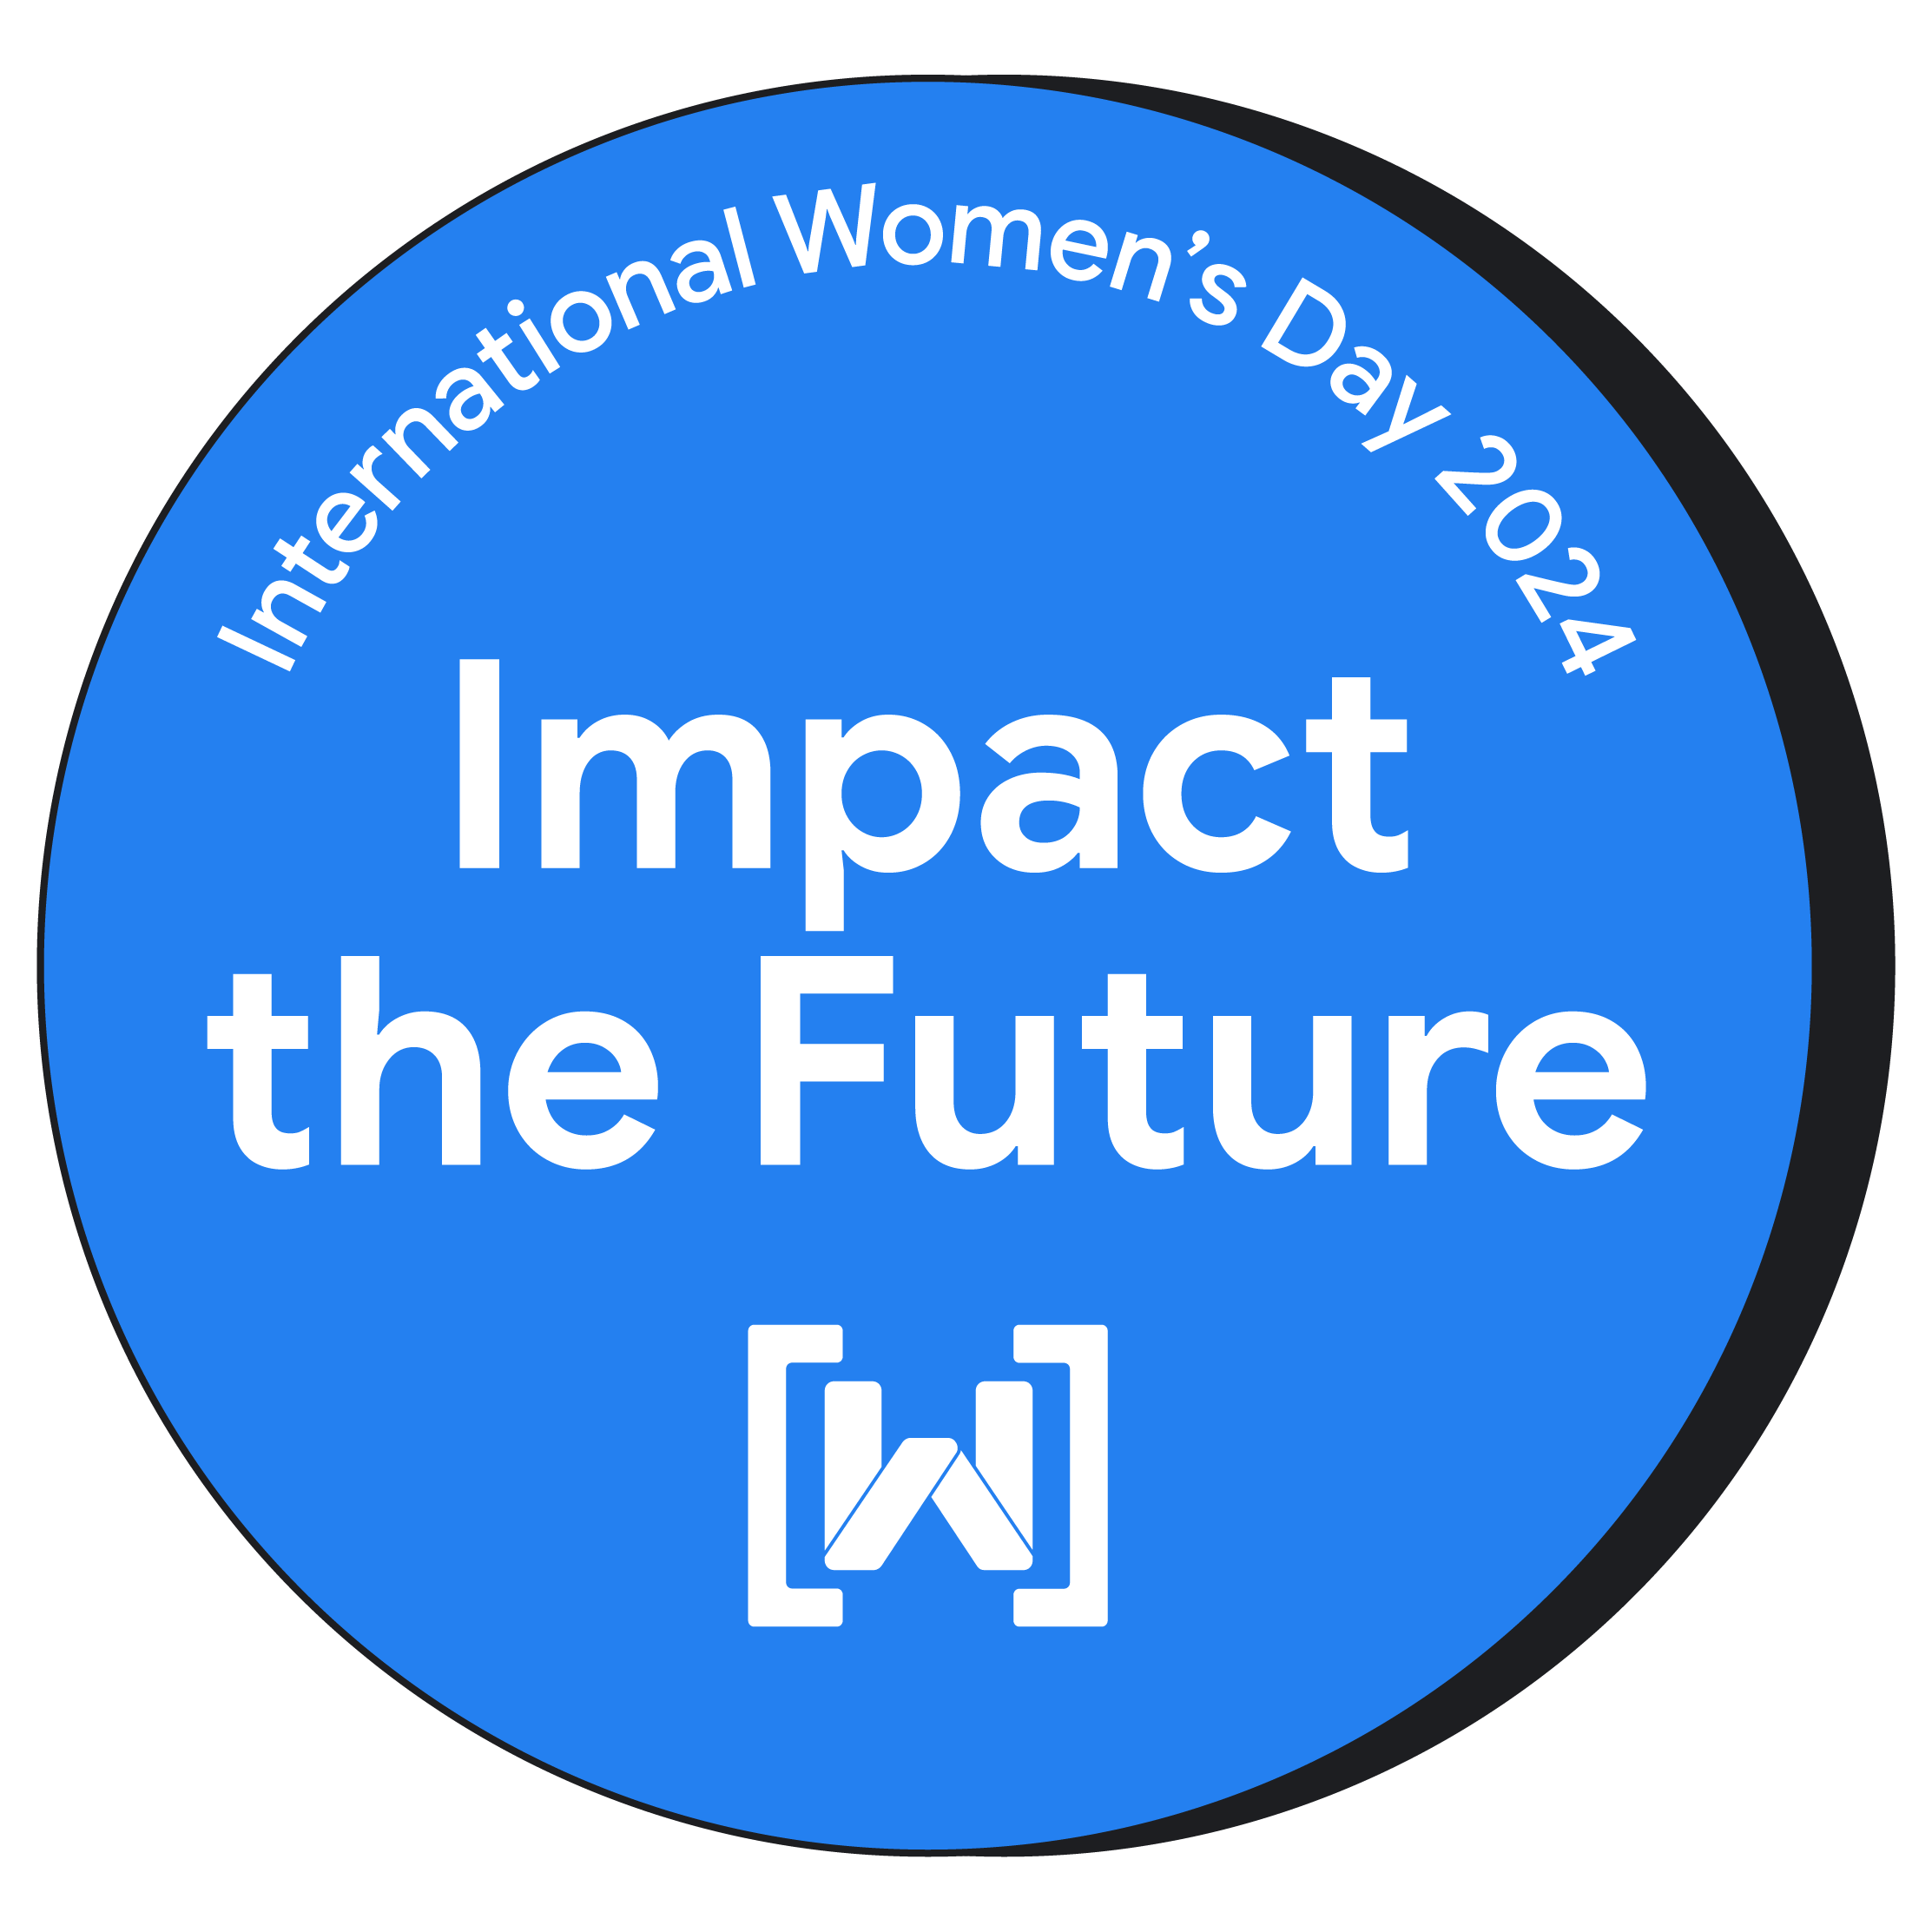 庆祝 2024 年国际妇女节的圆形徽章。该徽章采用亮蓝色背景，中心位置醒目地显示“影响未来”文字。Women Techmakers 徽标位于徽章底部。